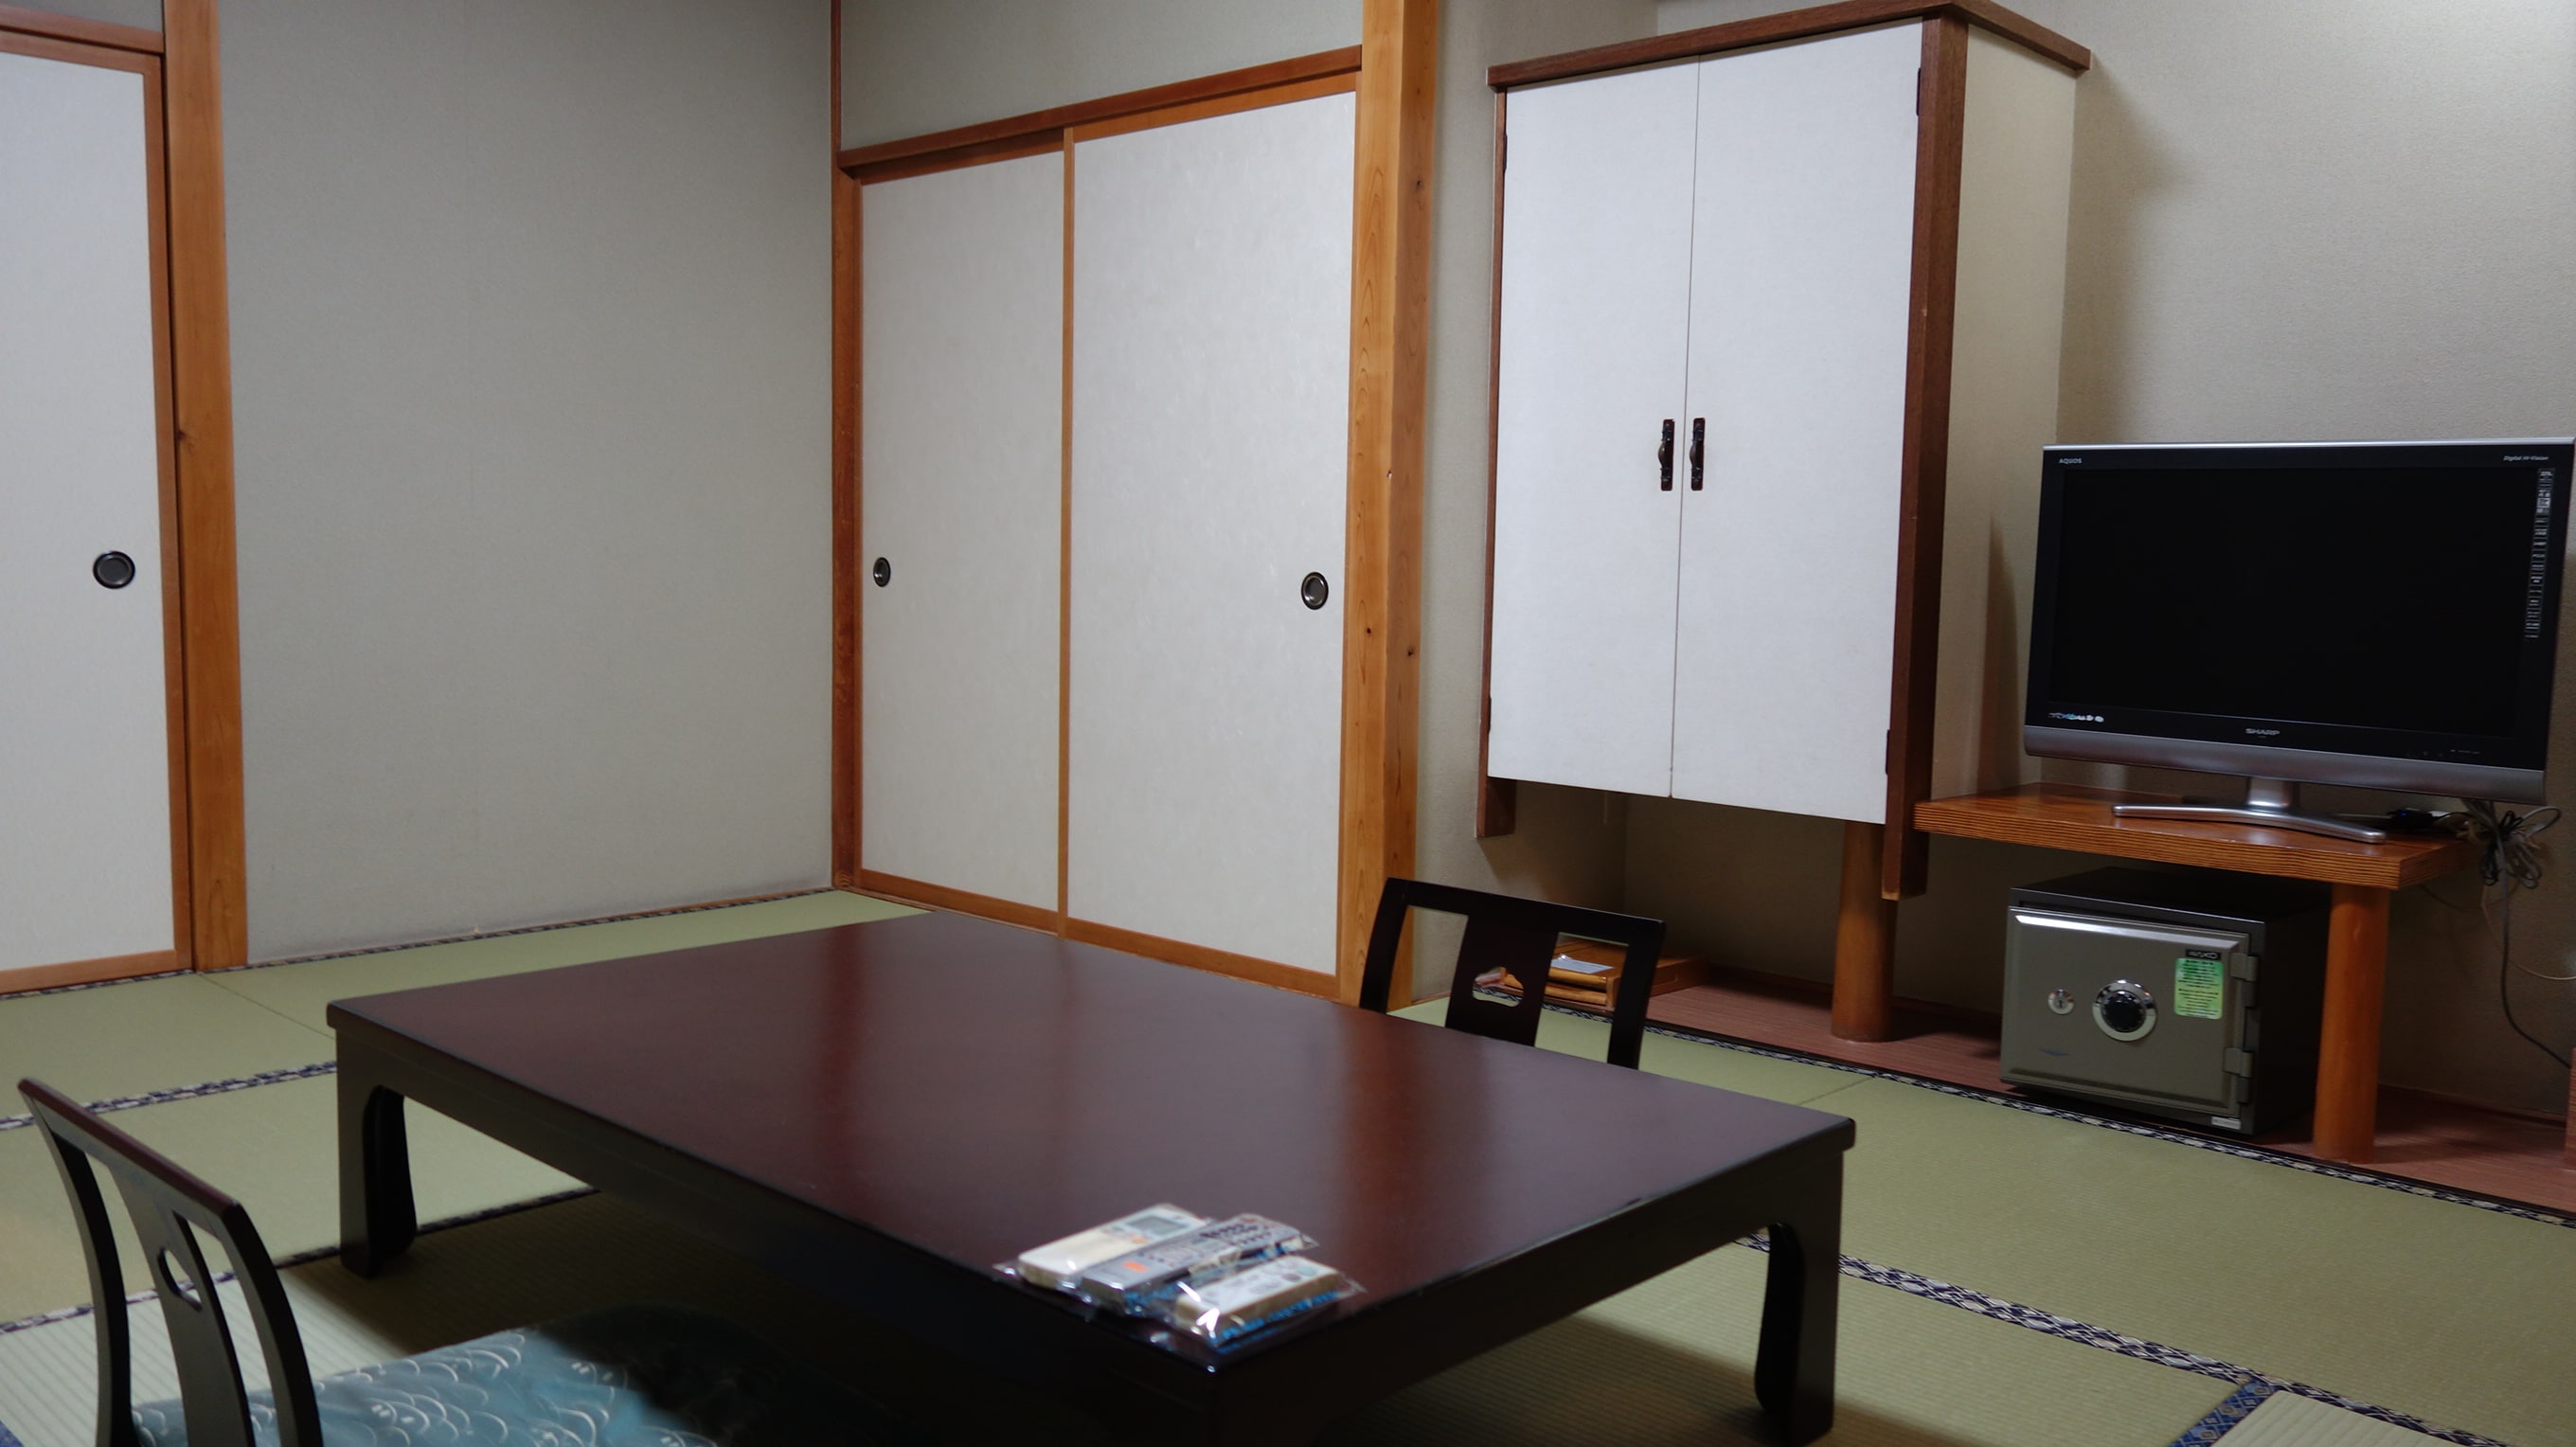 ตัวอย่างห้องสไตล์ญี่ปุ่น